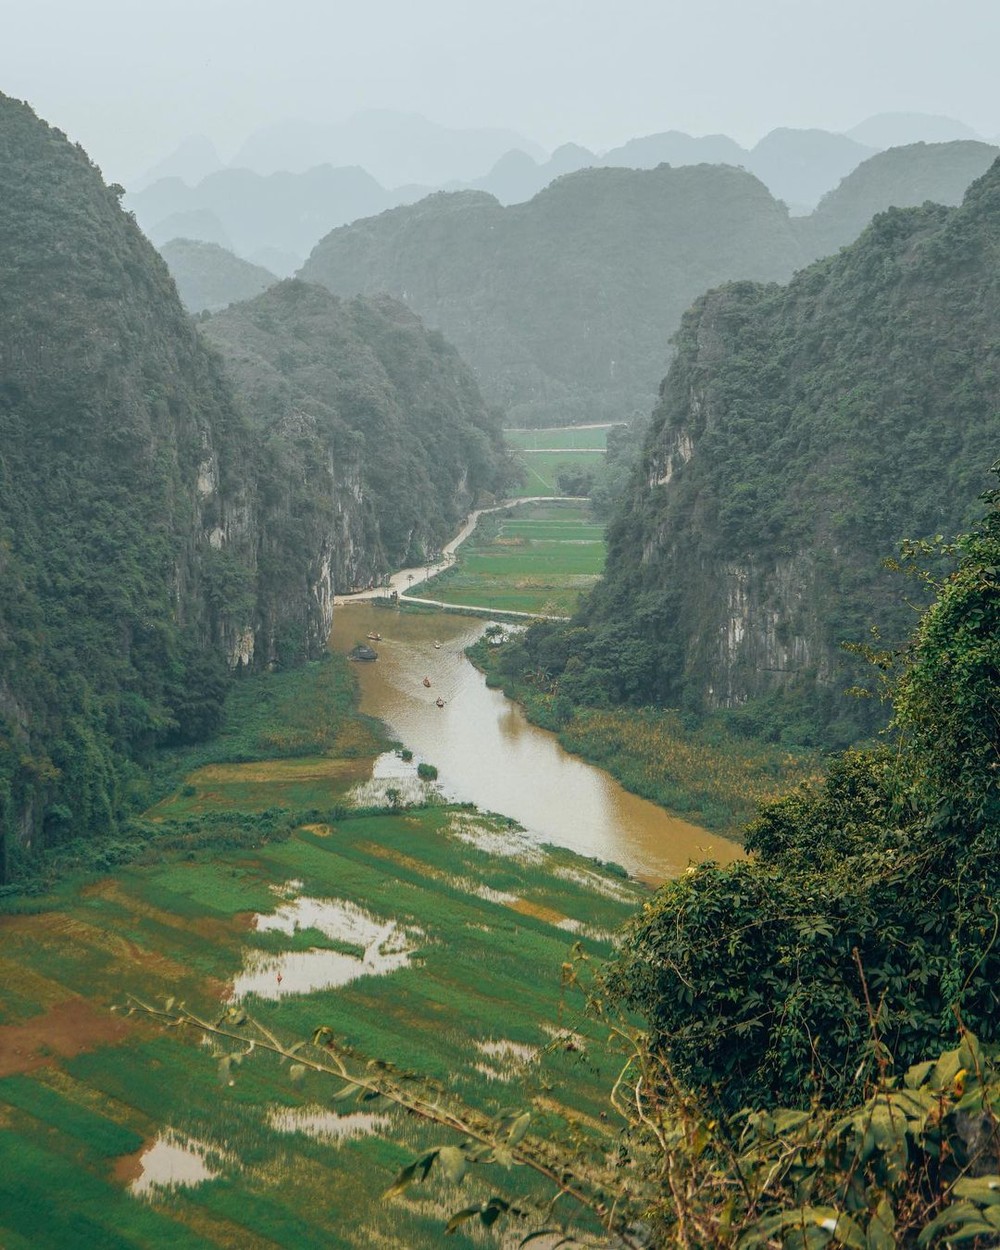 7 điểm du lịch Việt Nam sở hữu cảnh đẹp siêu thực được du khách nước ngoài công nhận không thể diễn đạt qua ảnh chụp - Ảnh 14.